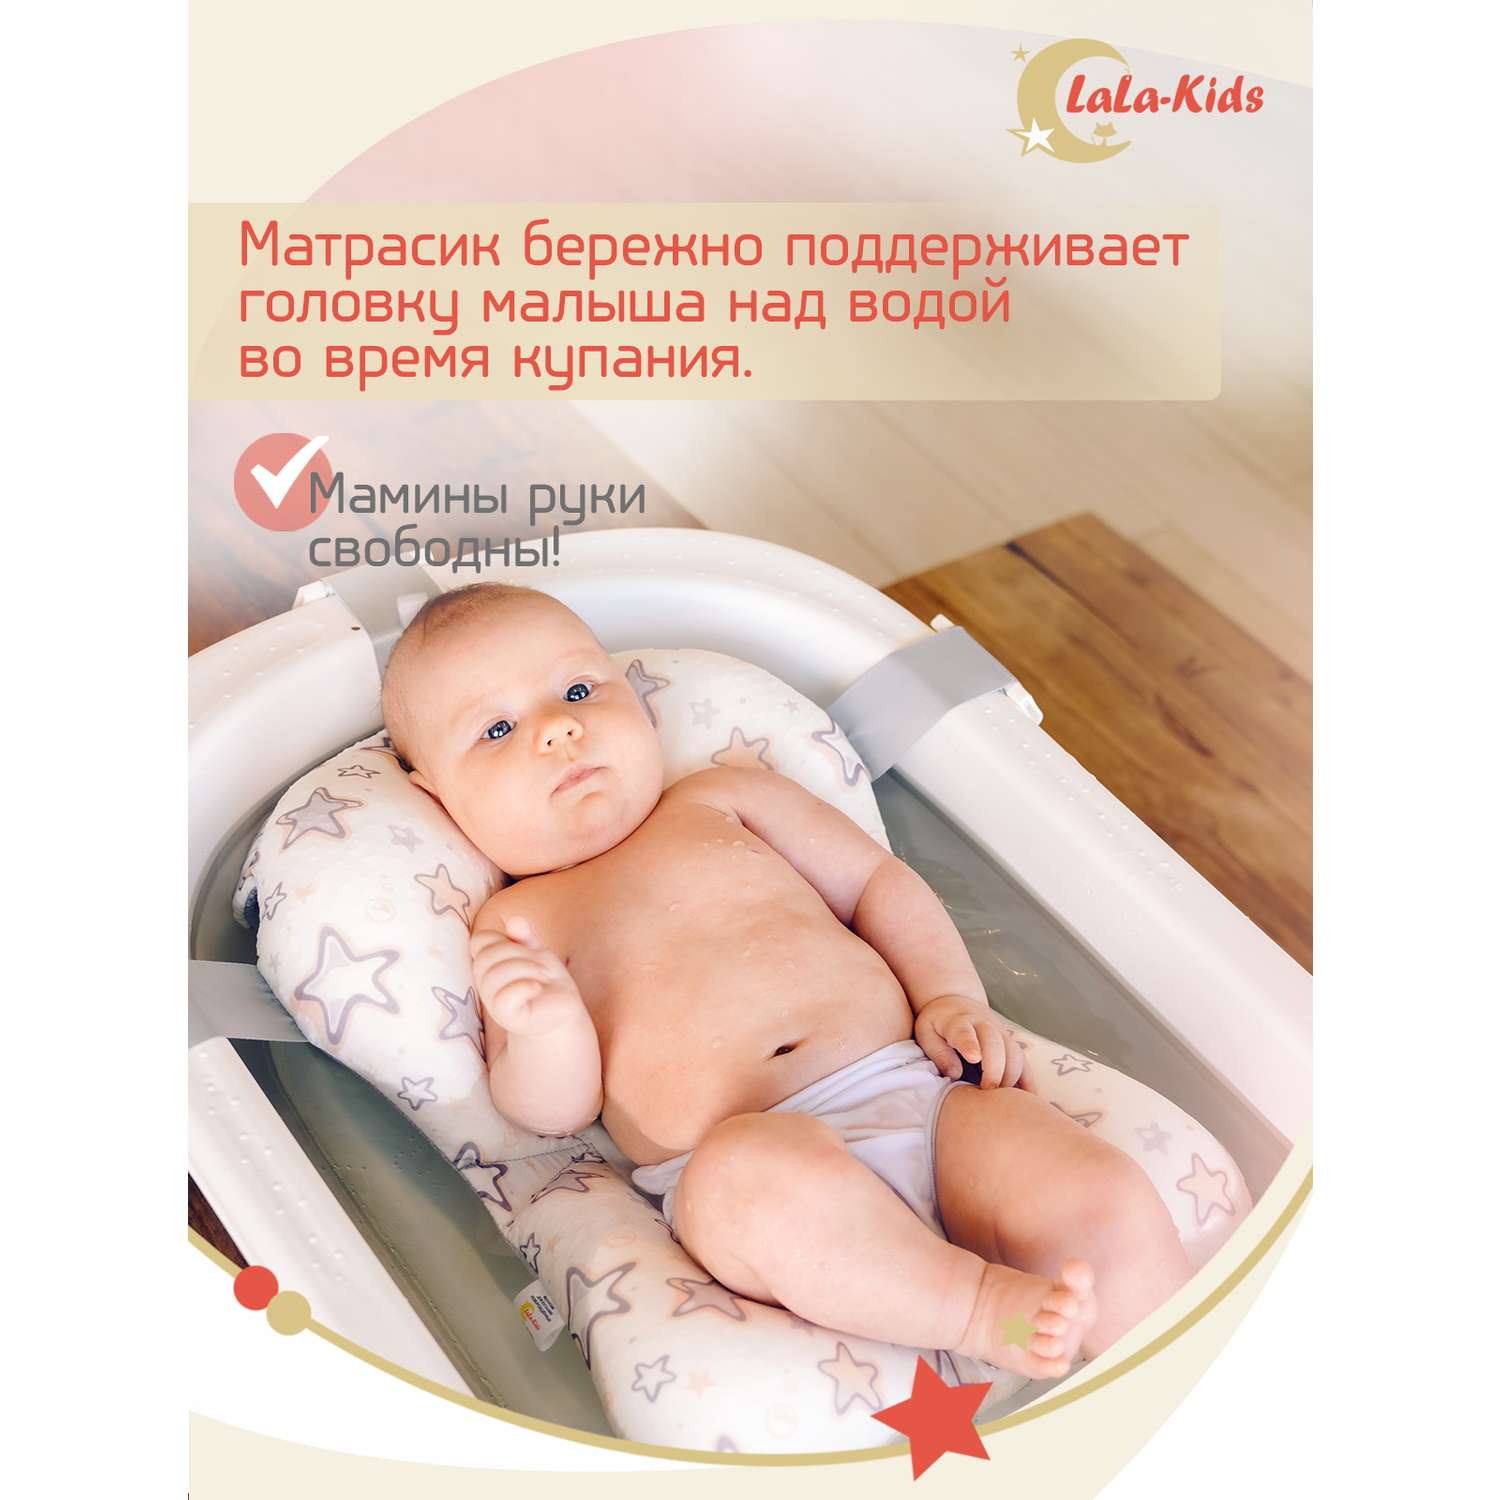 Ванночка складная LaLa-Kids для купания новорожденных с матрасиком в комплекте - фото 9